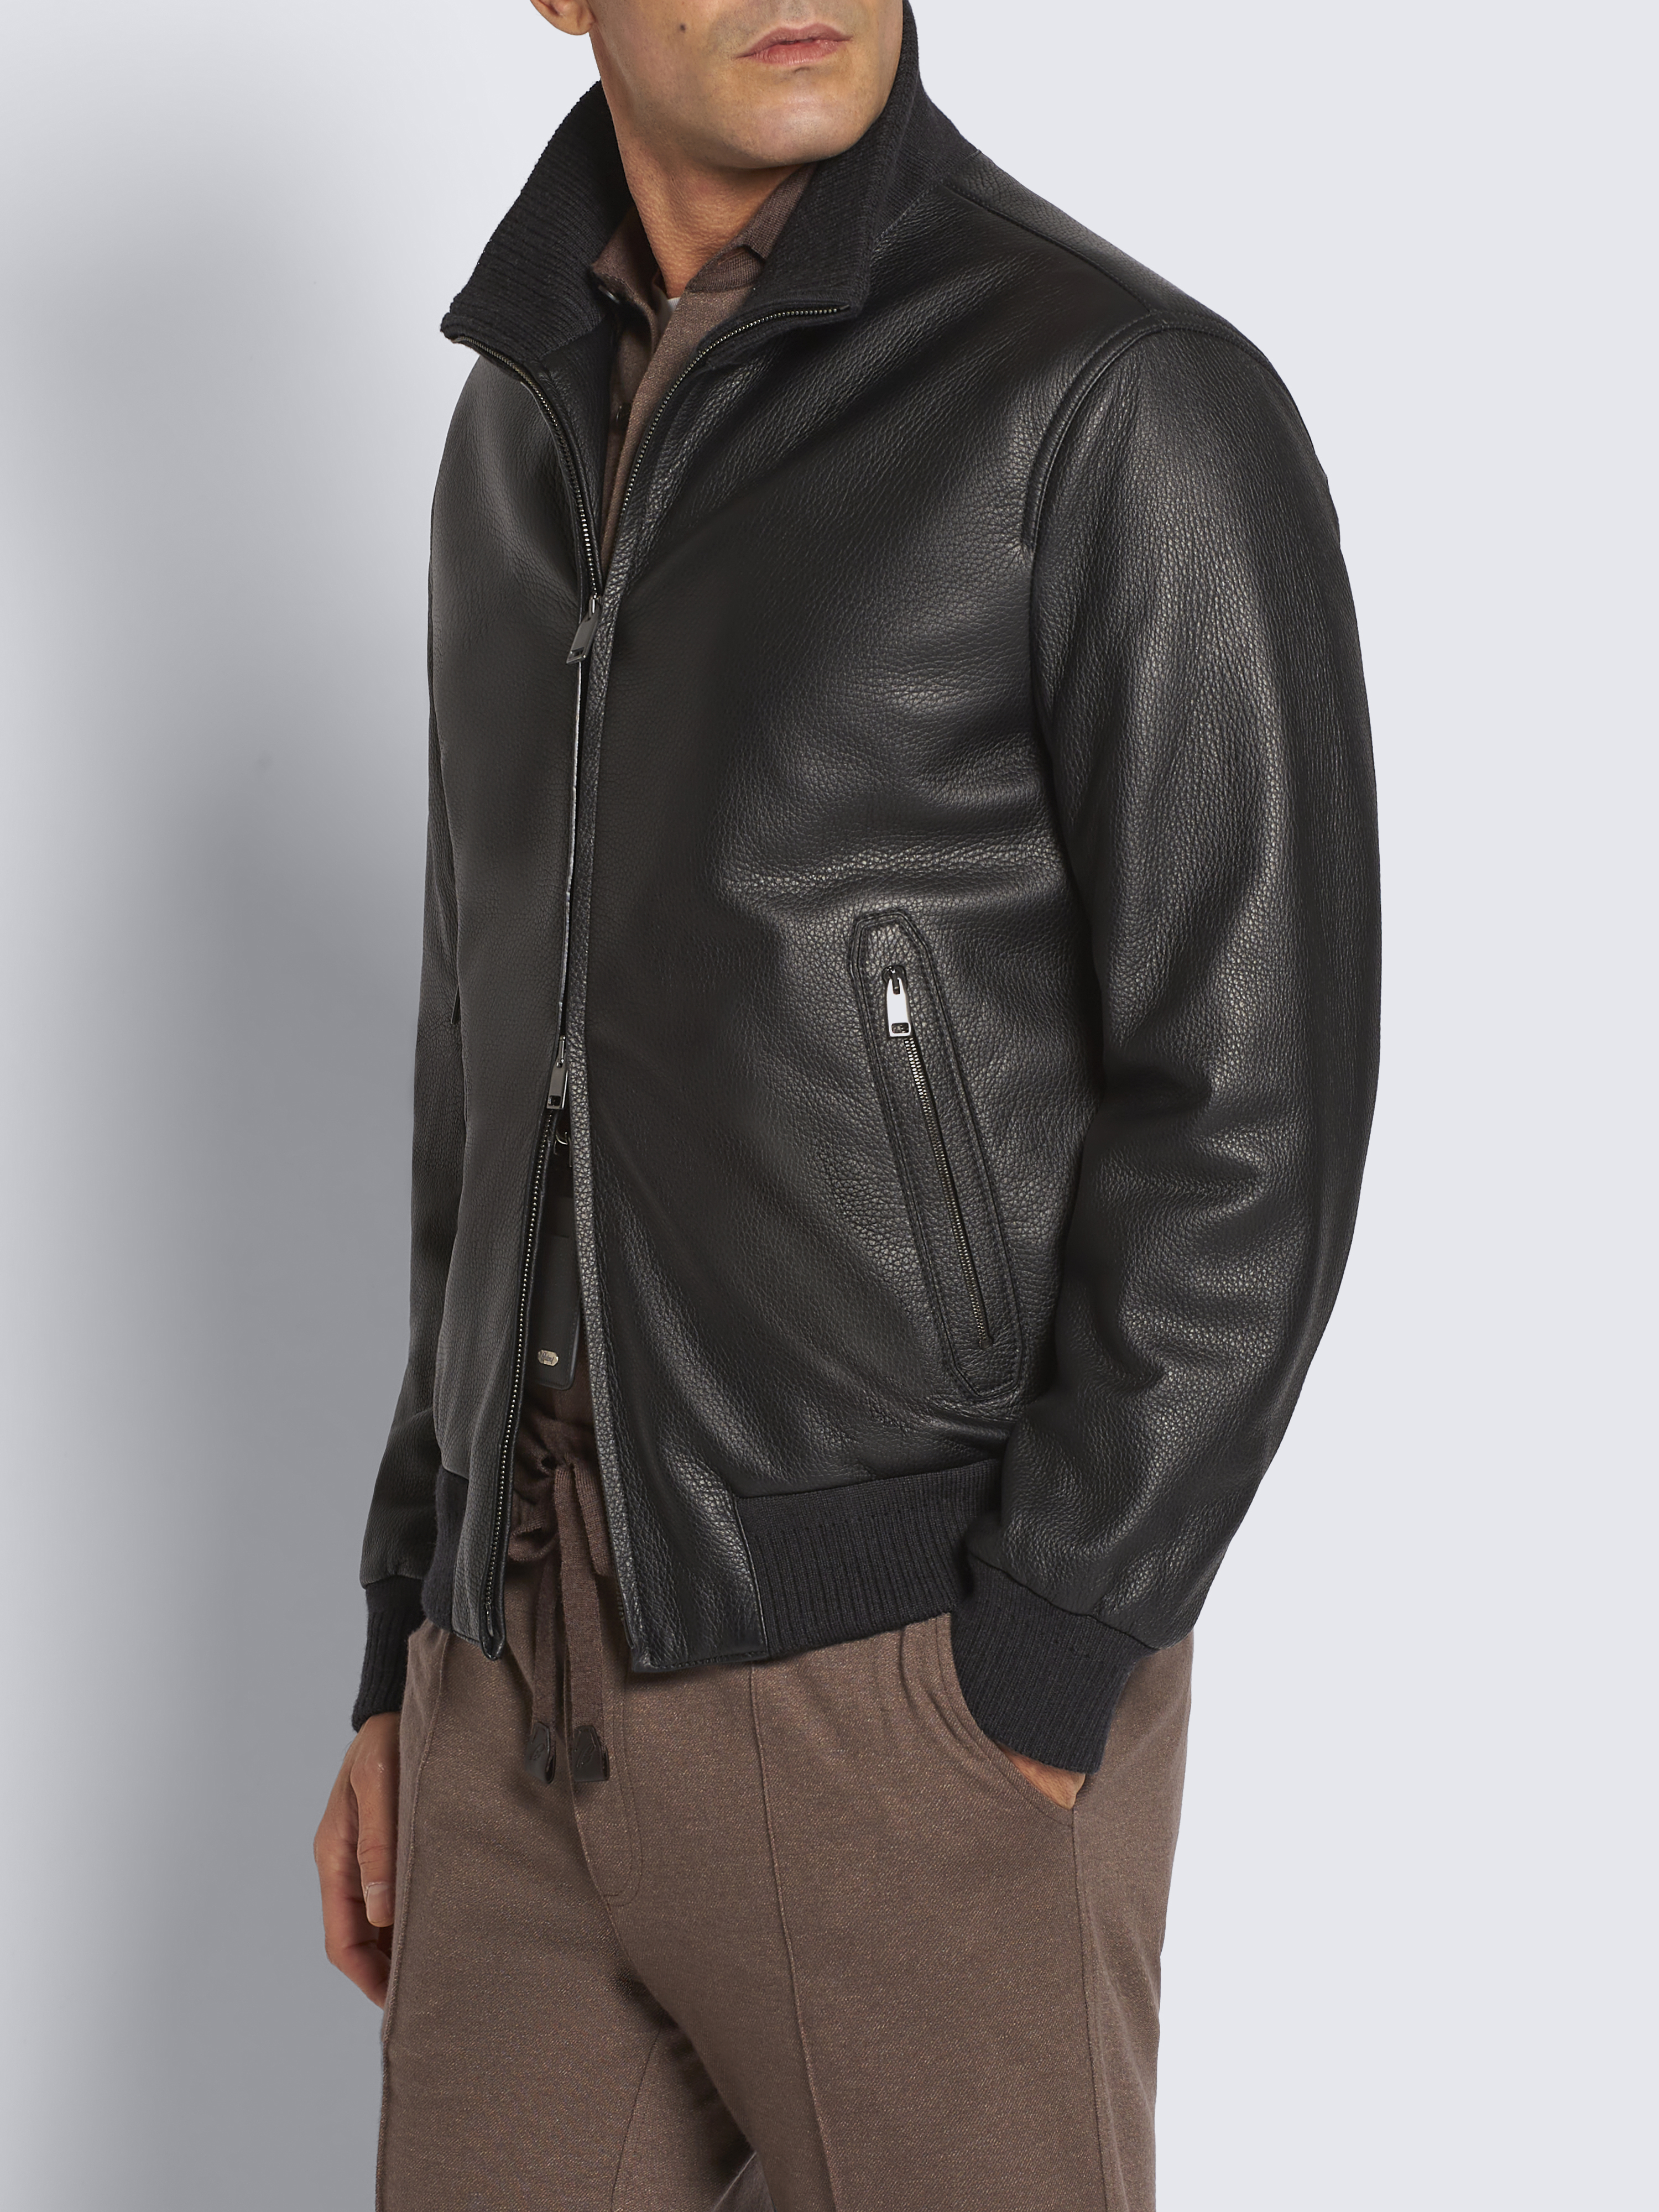 Black leather blouson | Brioni® AR Official Store